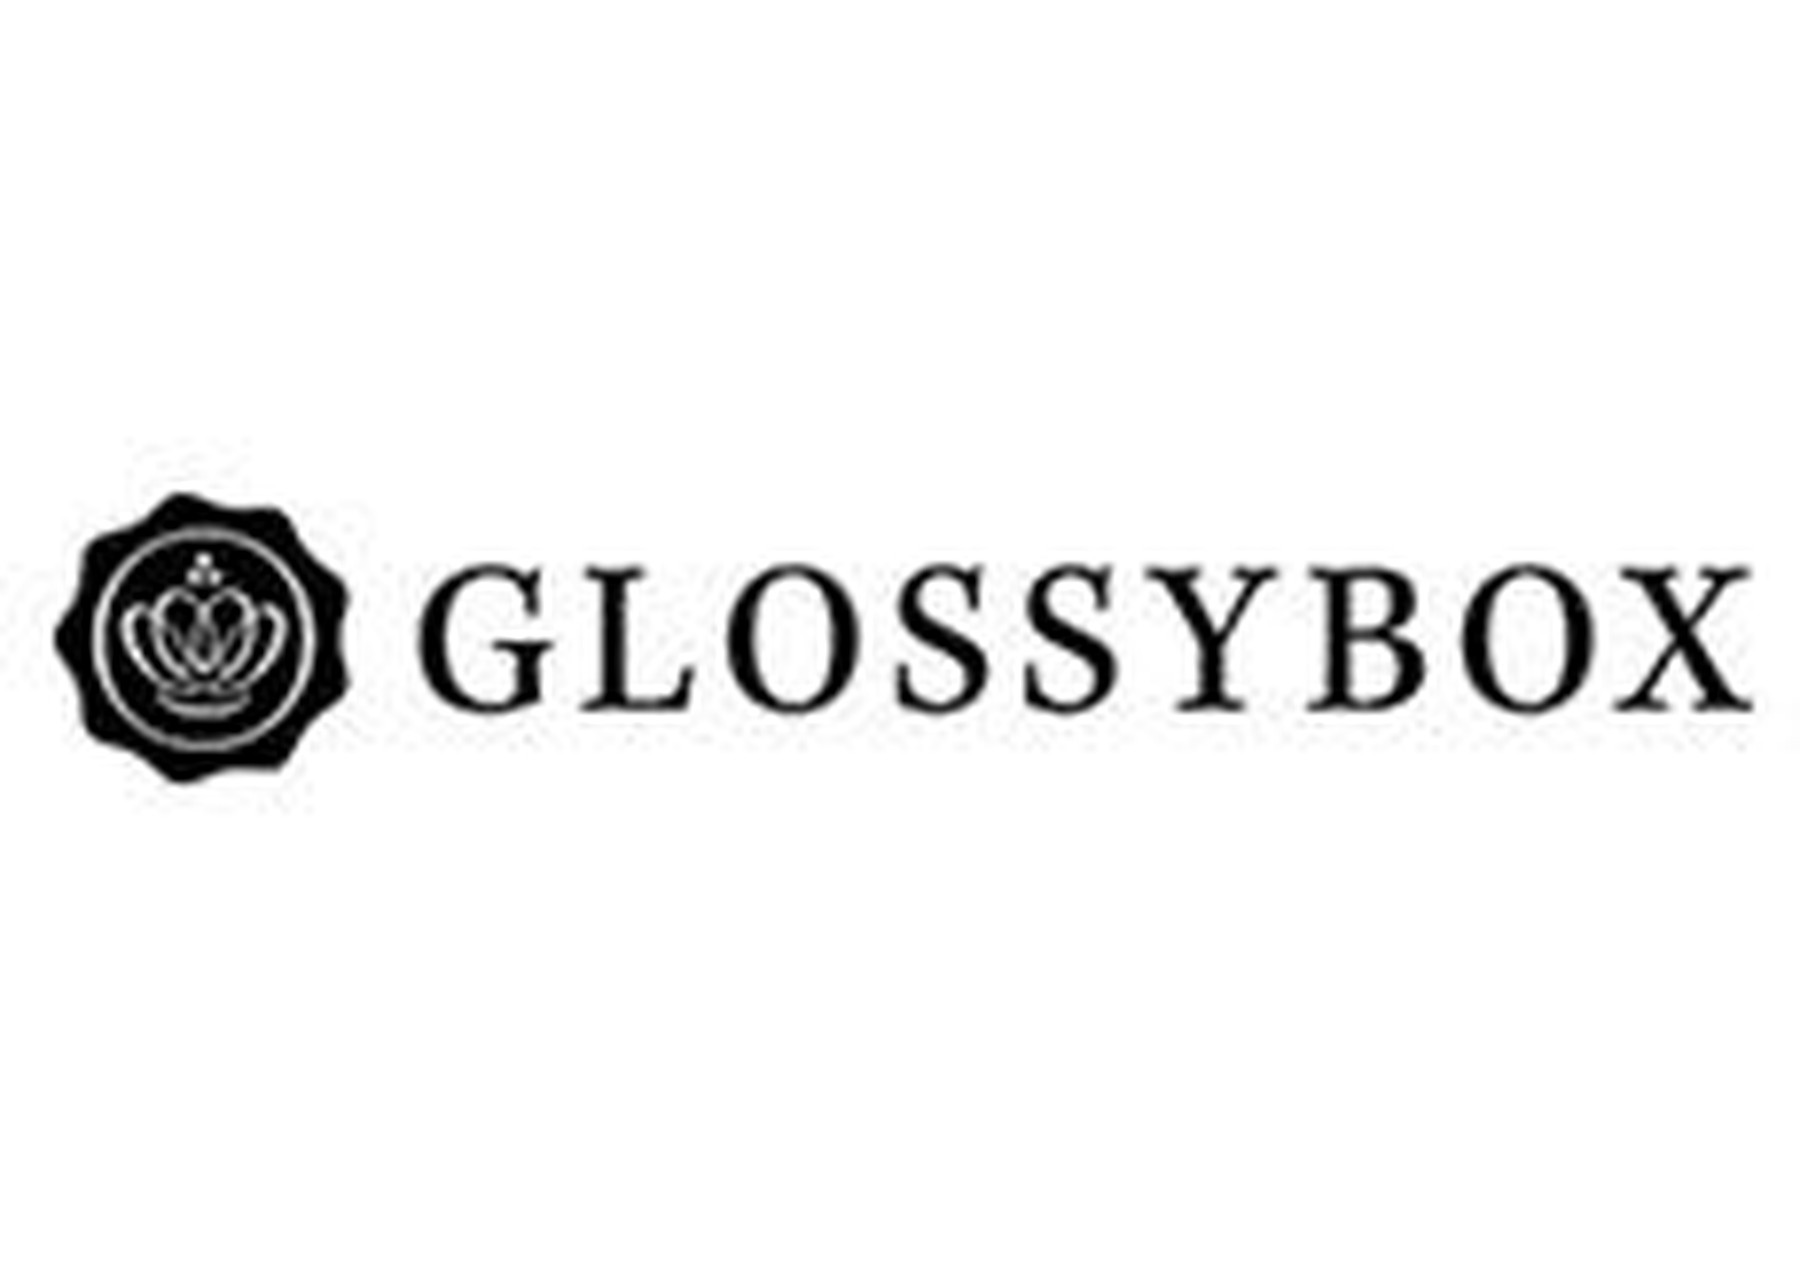 Glossybox rabattko